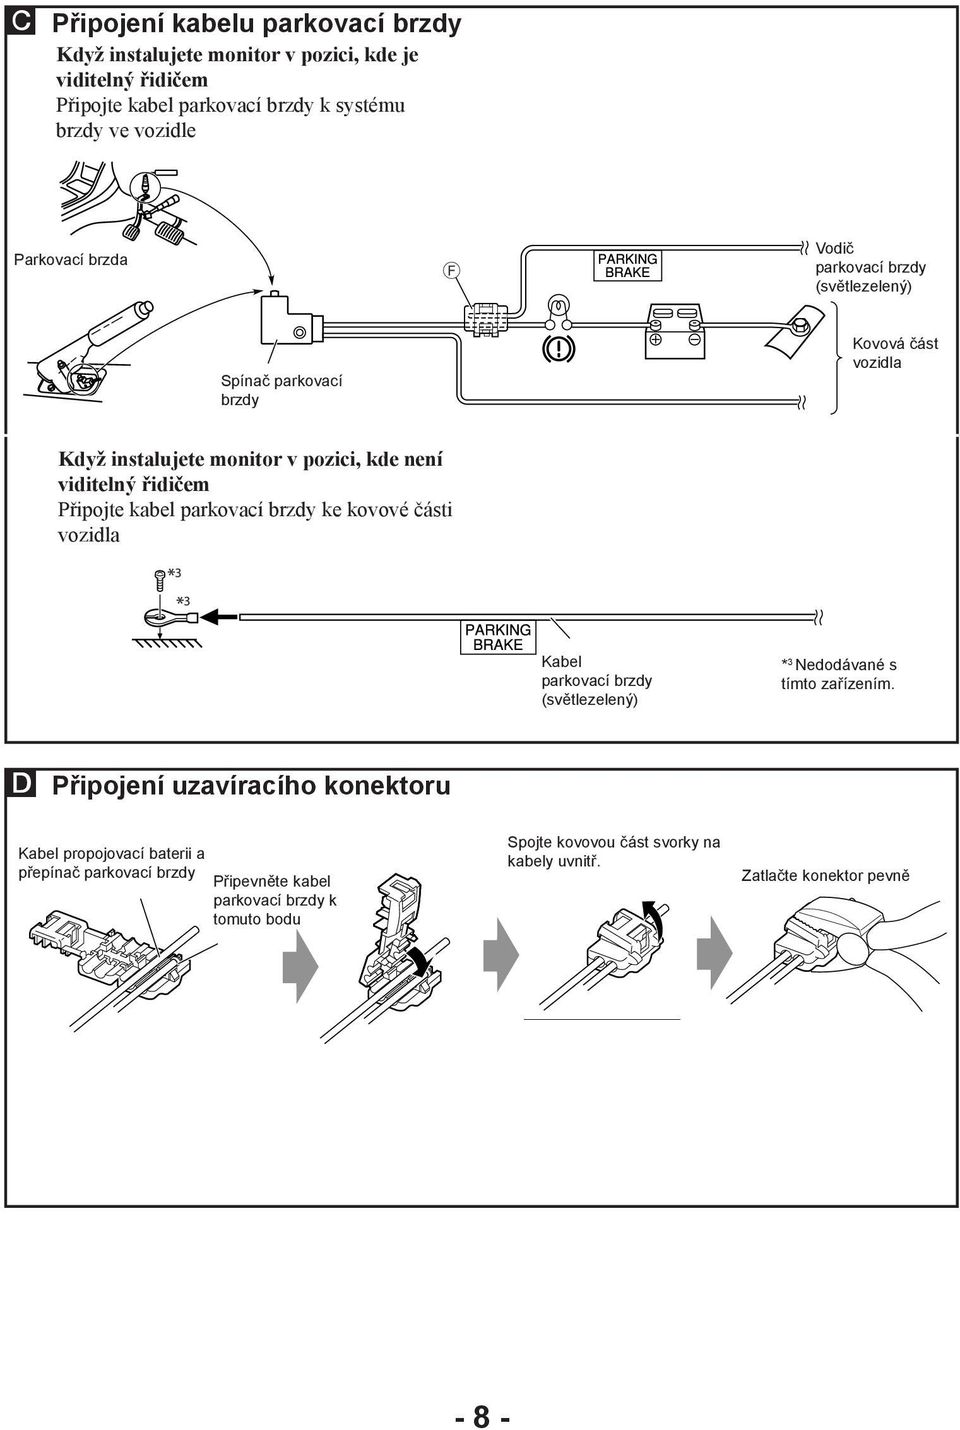 kabel parkovací brzdy ke kovové části vozidla Kabel parkovací brzdy (světlezelený) * 3 Nedodávané s tímto zařízením.